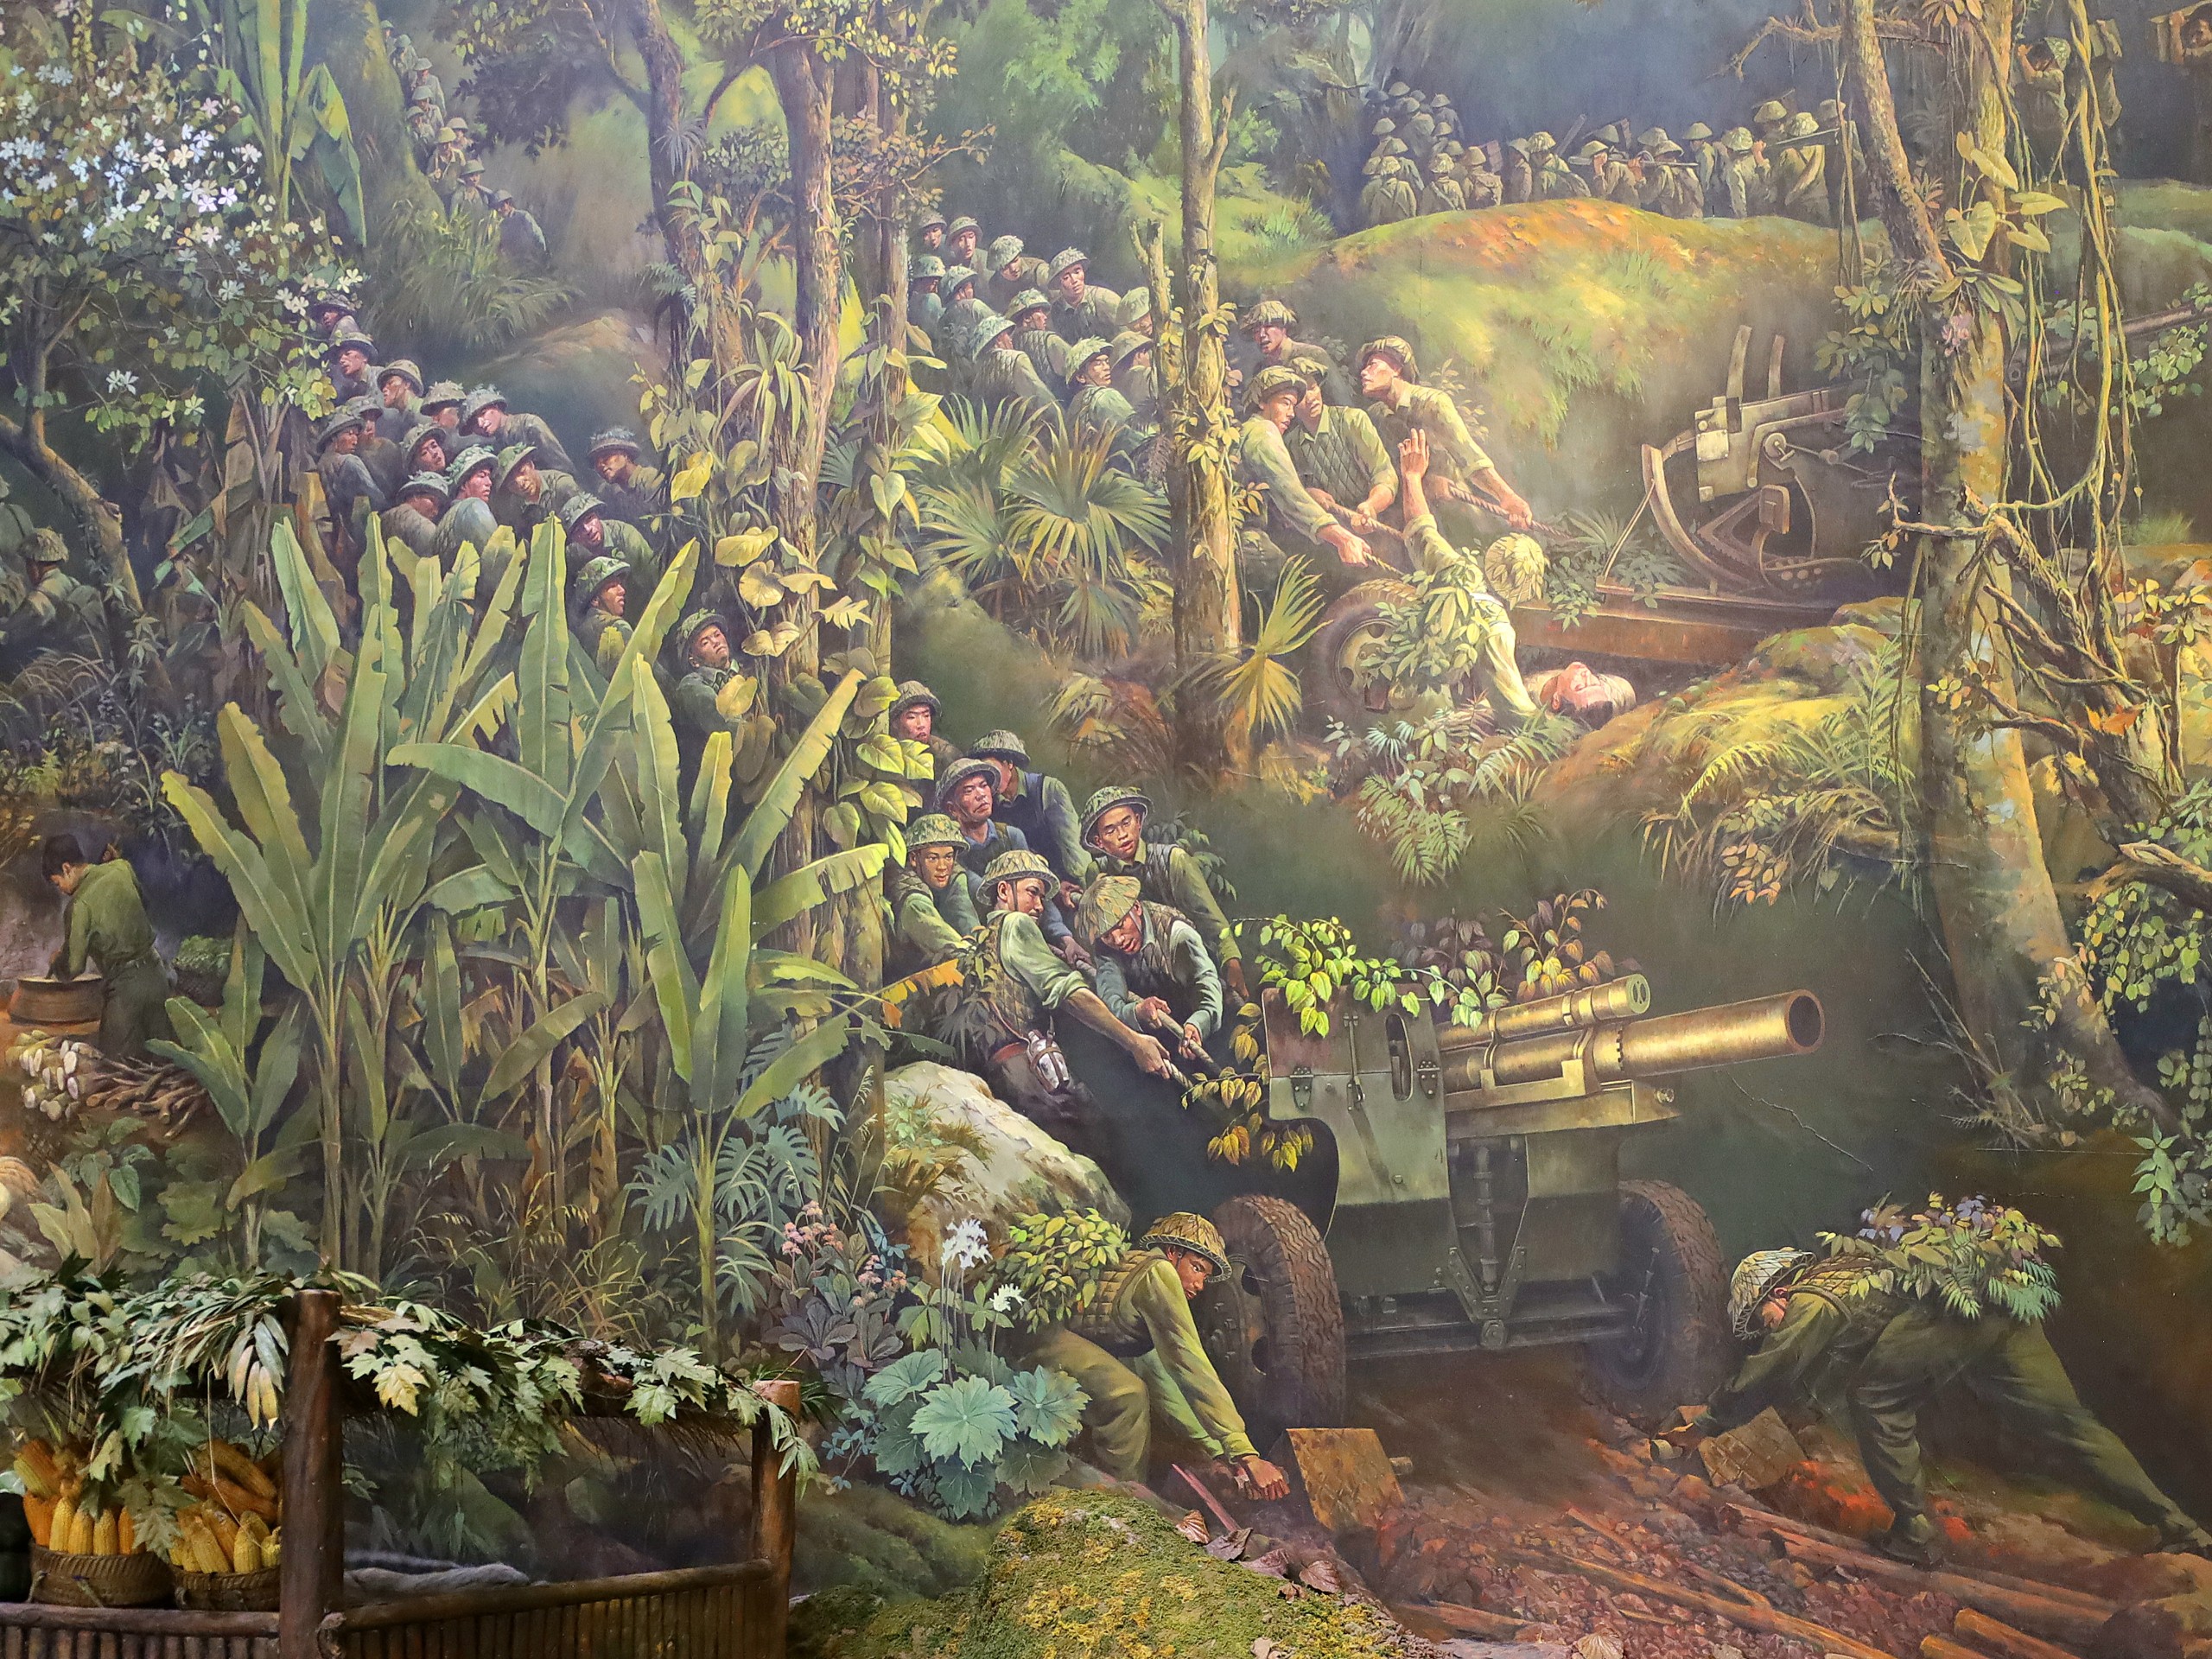 Hình ảnh chiến sĩ kéo pháo vào mặt trận Điện Biên Phủ được tái hiện hết sức sinh động và chân thật.